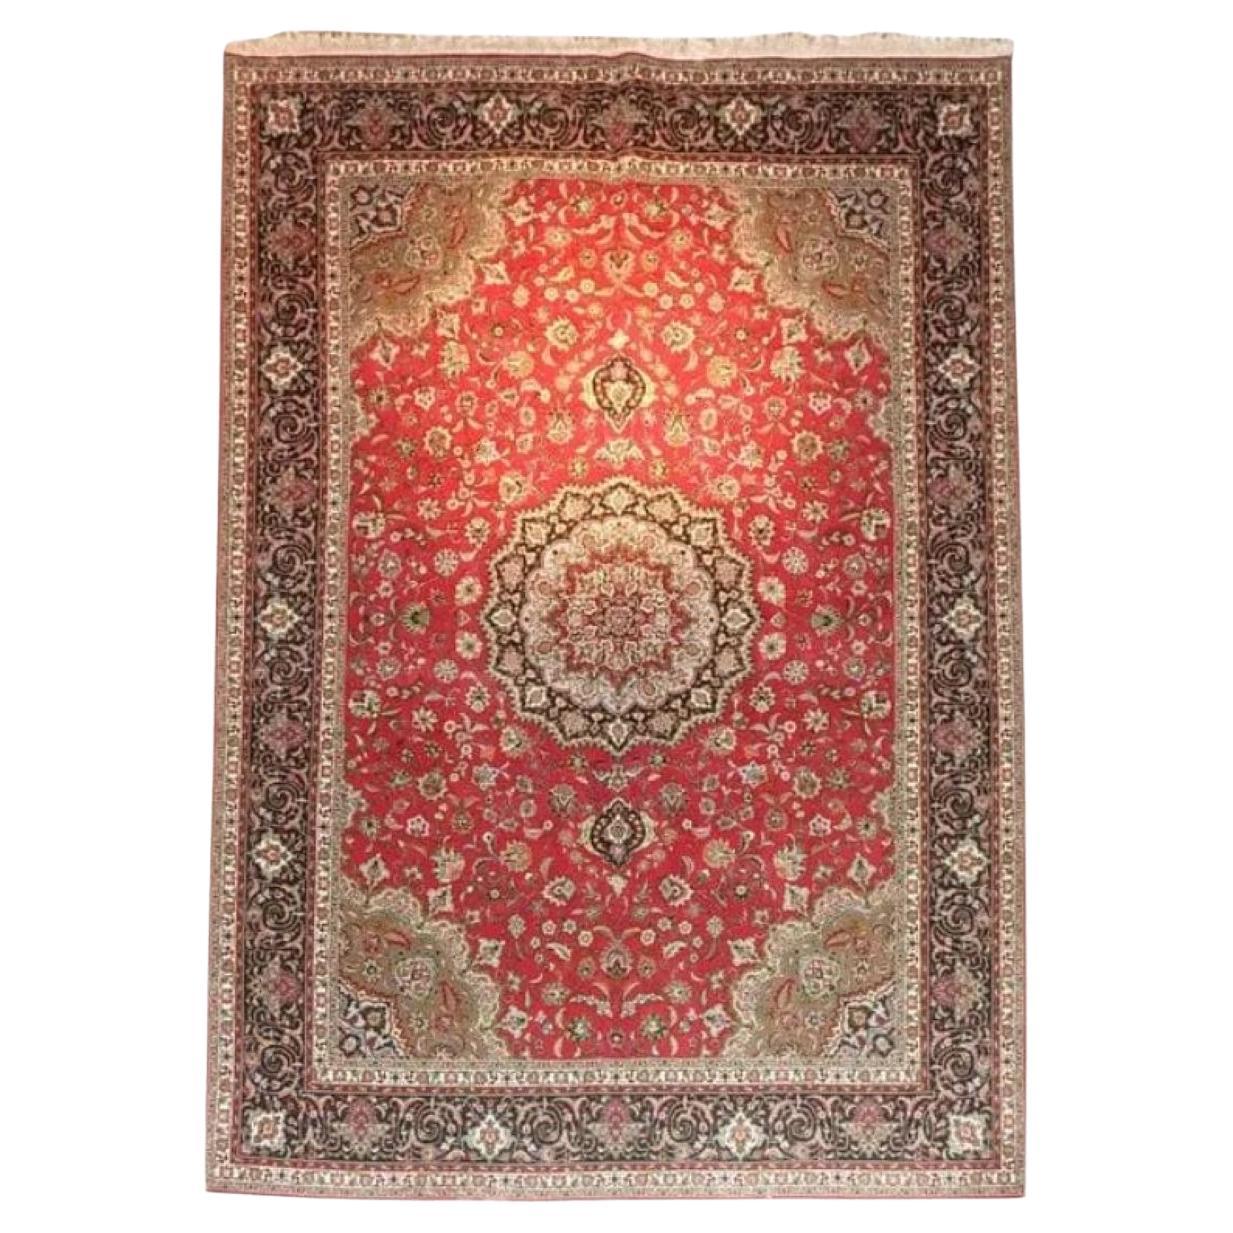 Très beau tapis persan Tabriz en soie et laine - 11.8' x 8.3'